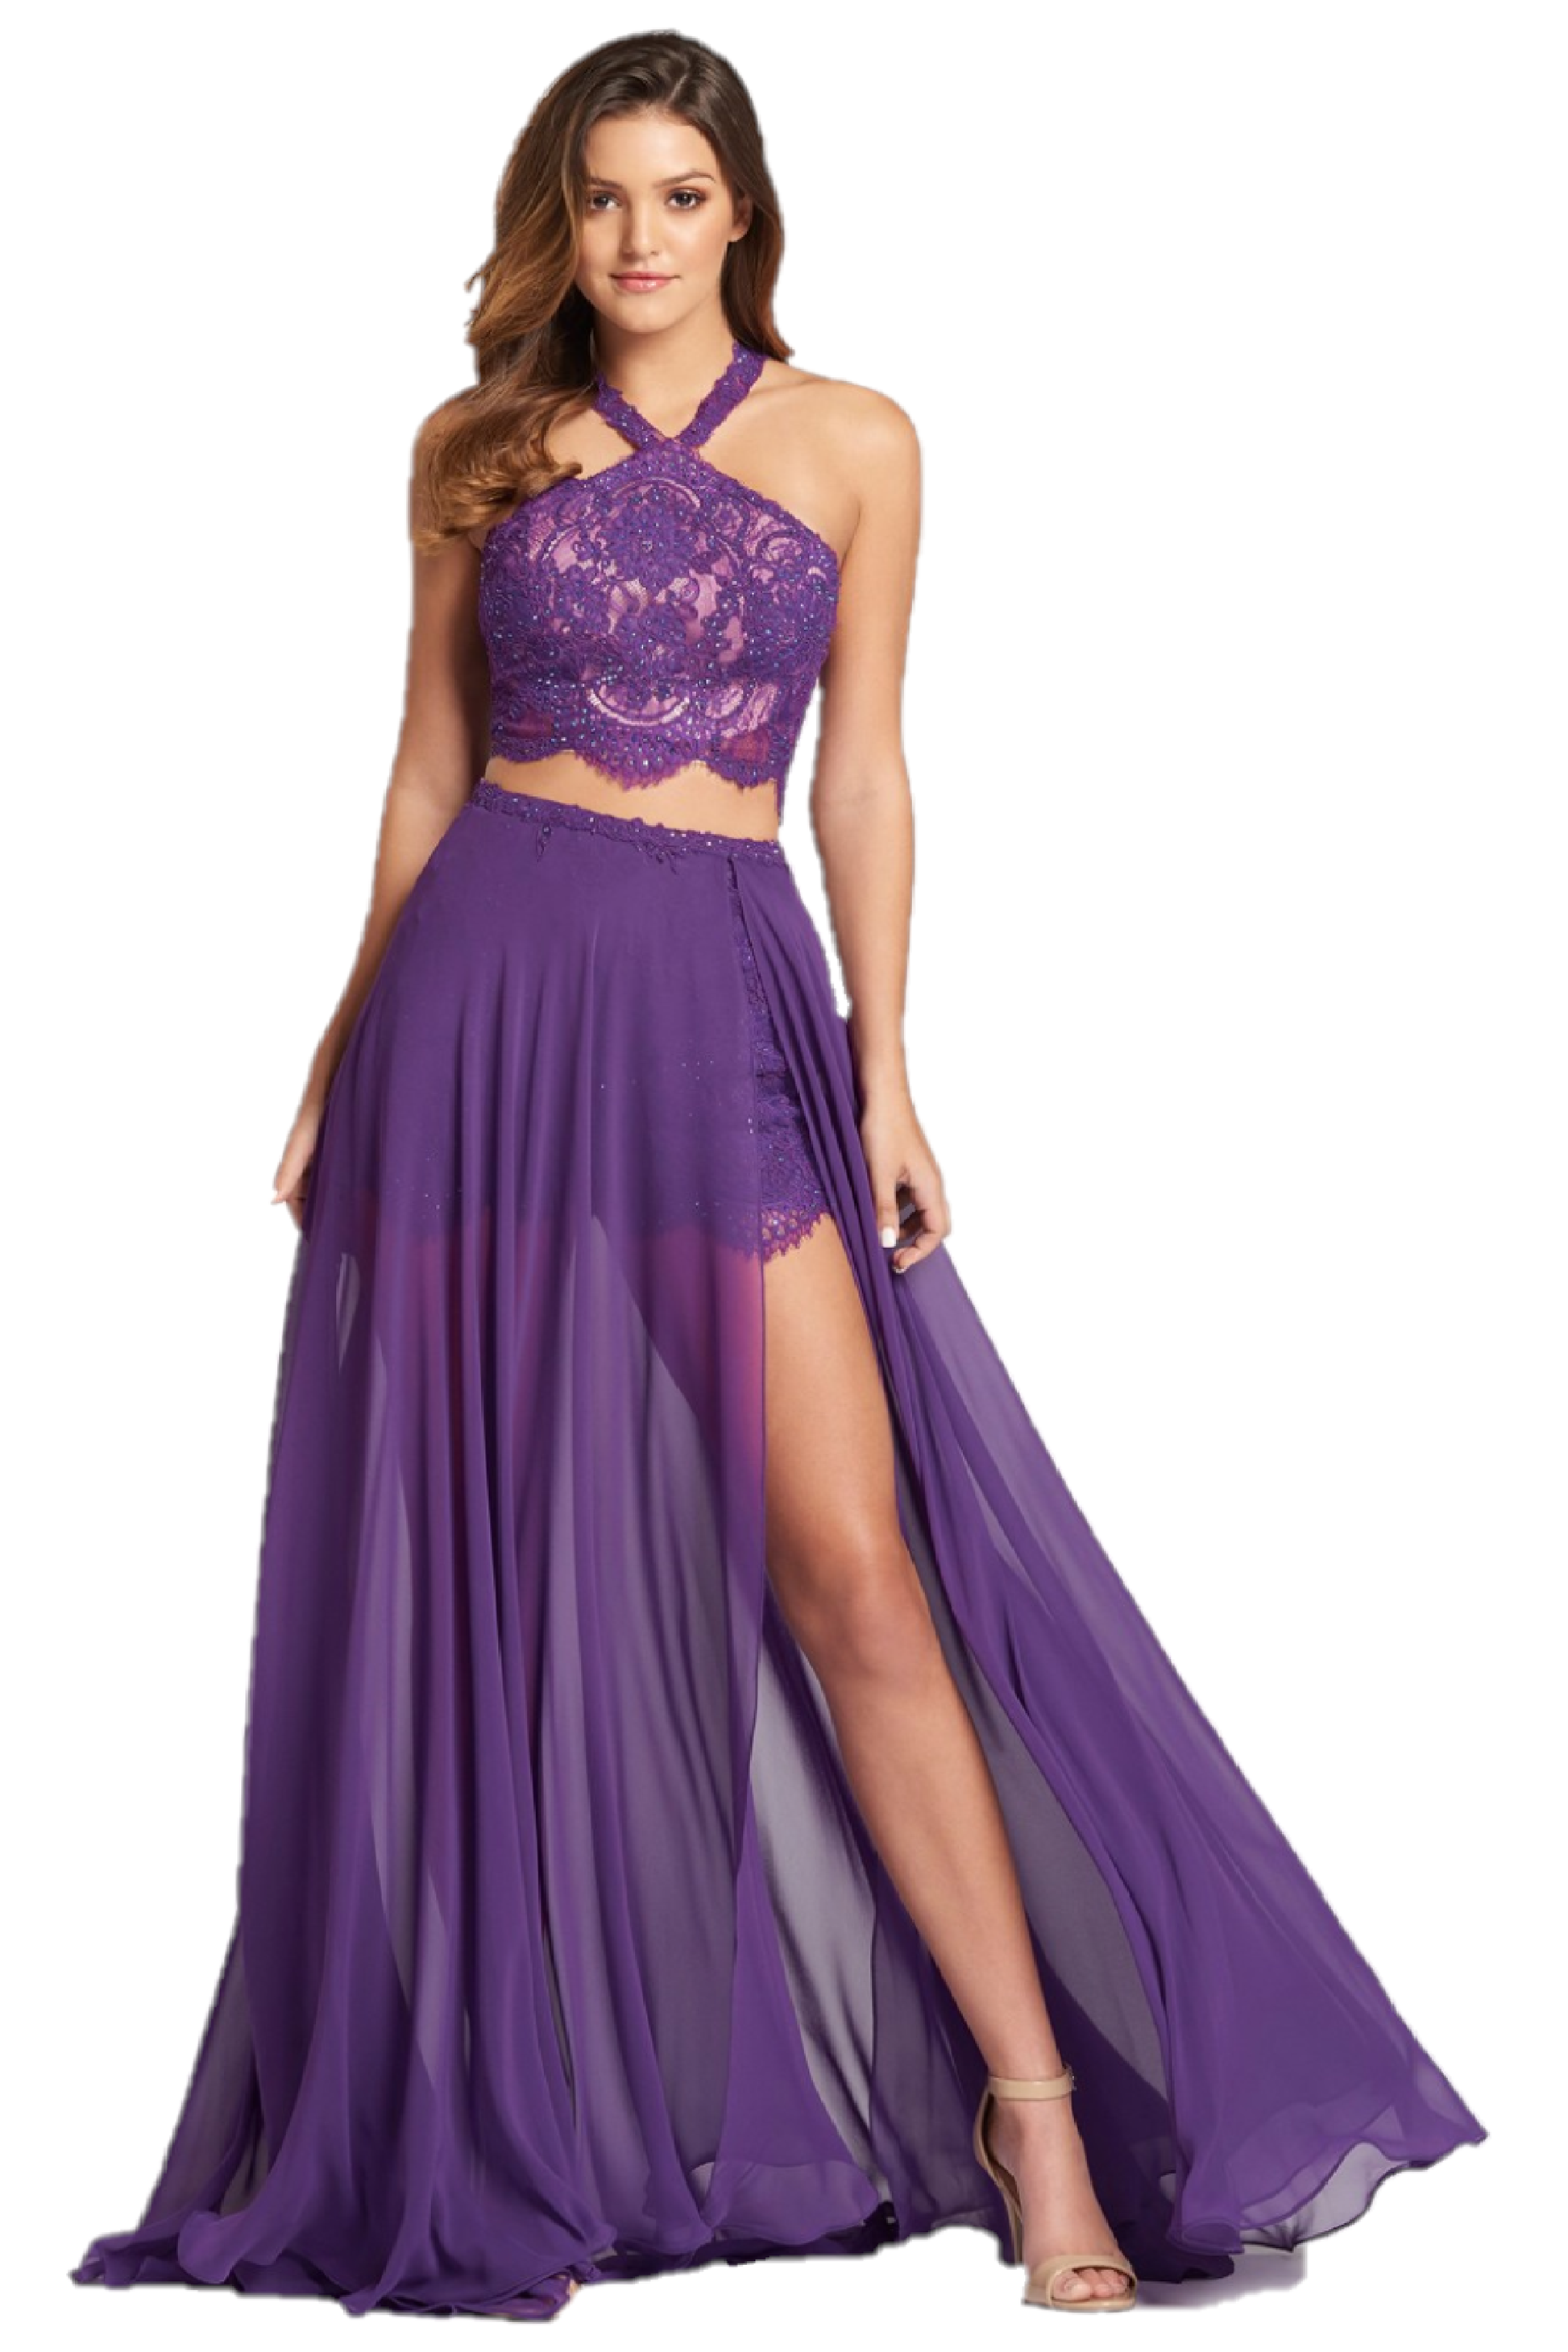 in Stock Ellie Wilde EW118109 Size 2 Purple Short Two Piece Lace Romper Overskirt Formal Dress